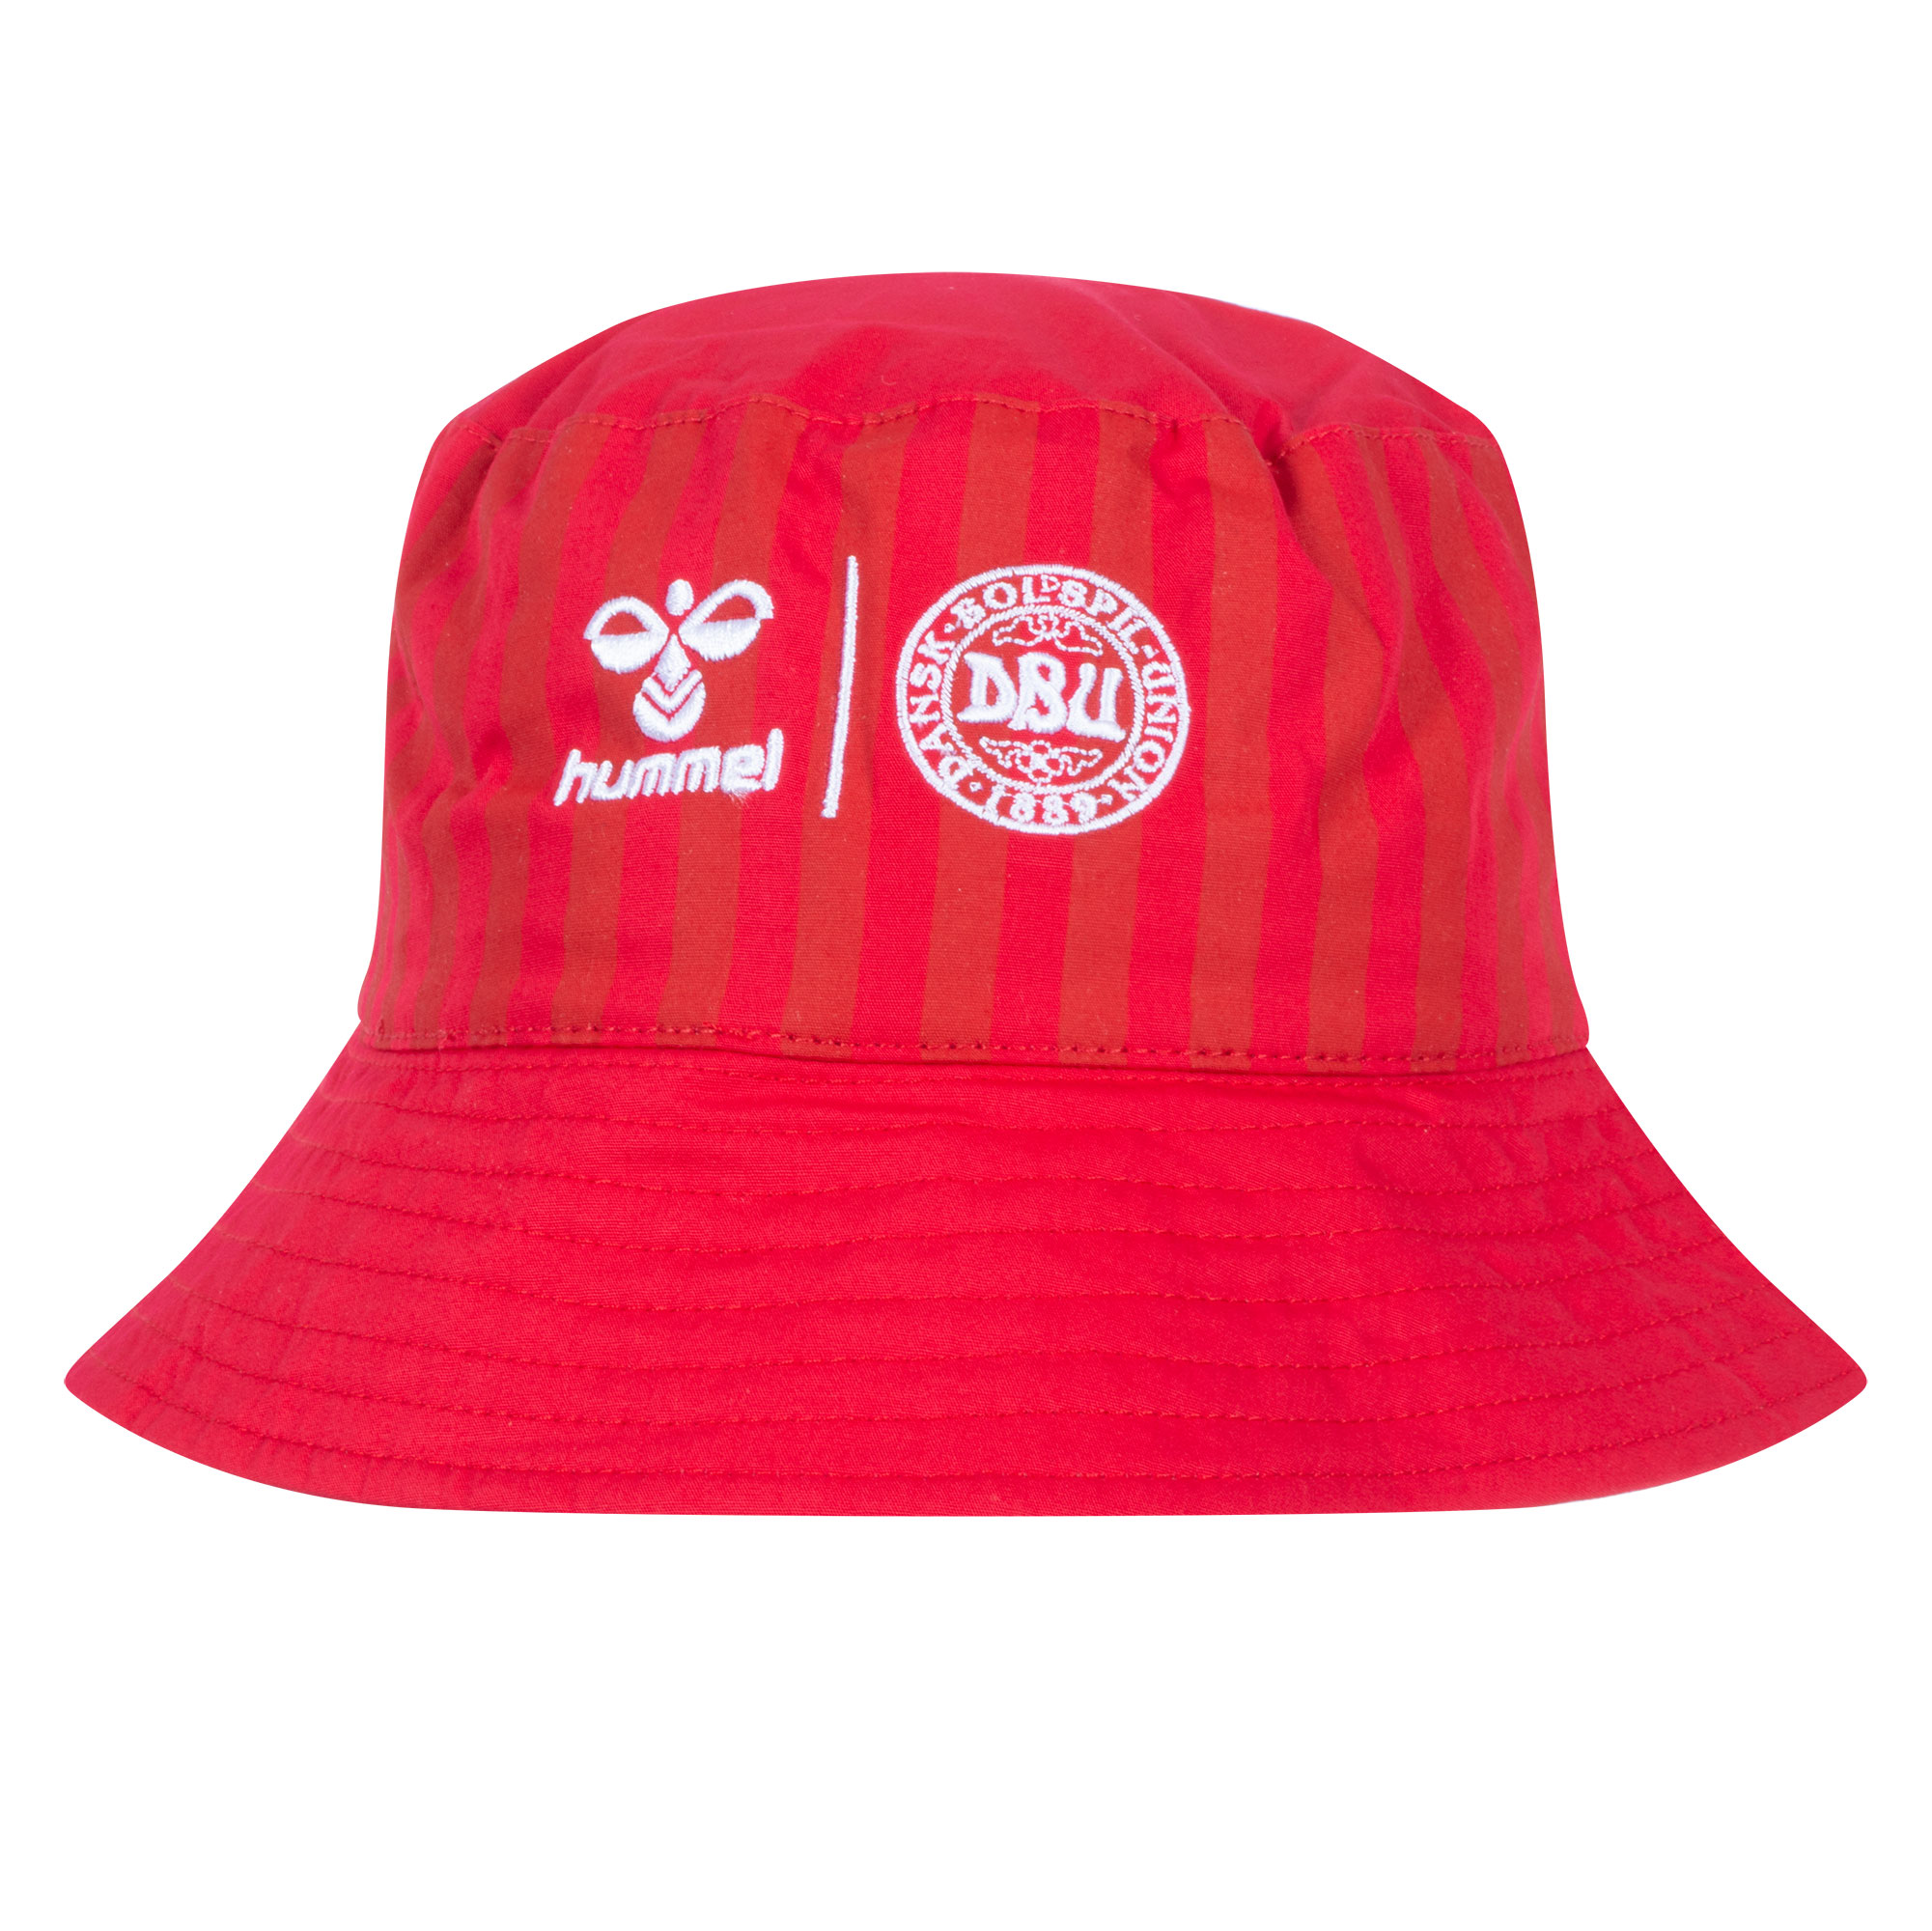  Denmark Bucket Hat - Red